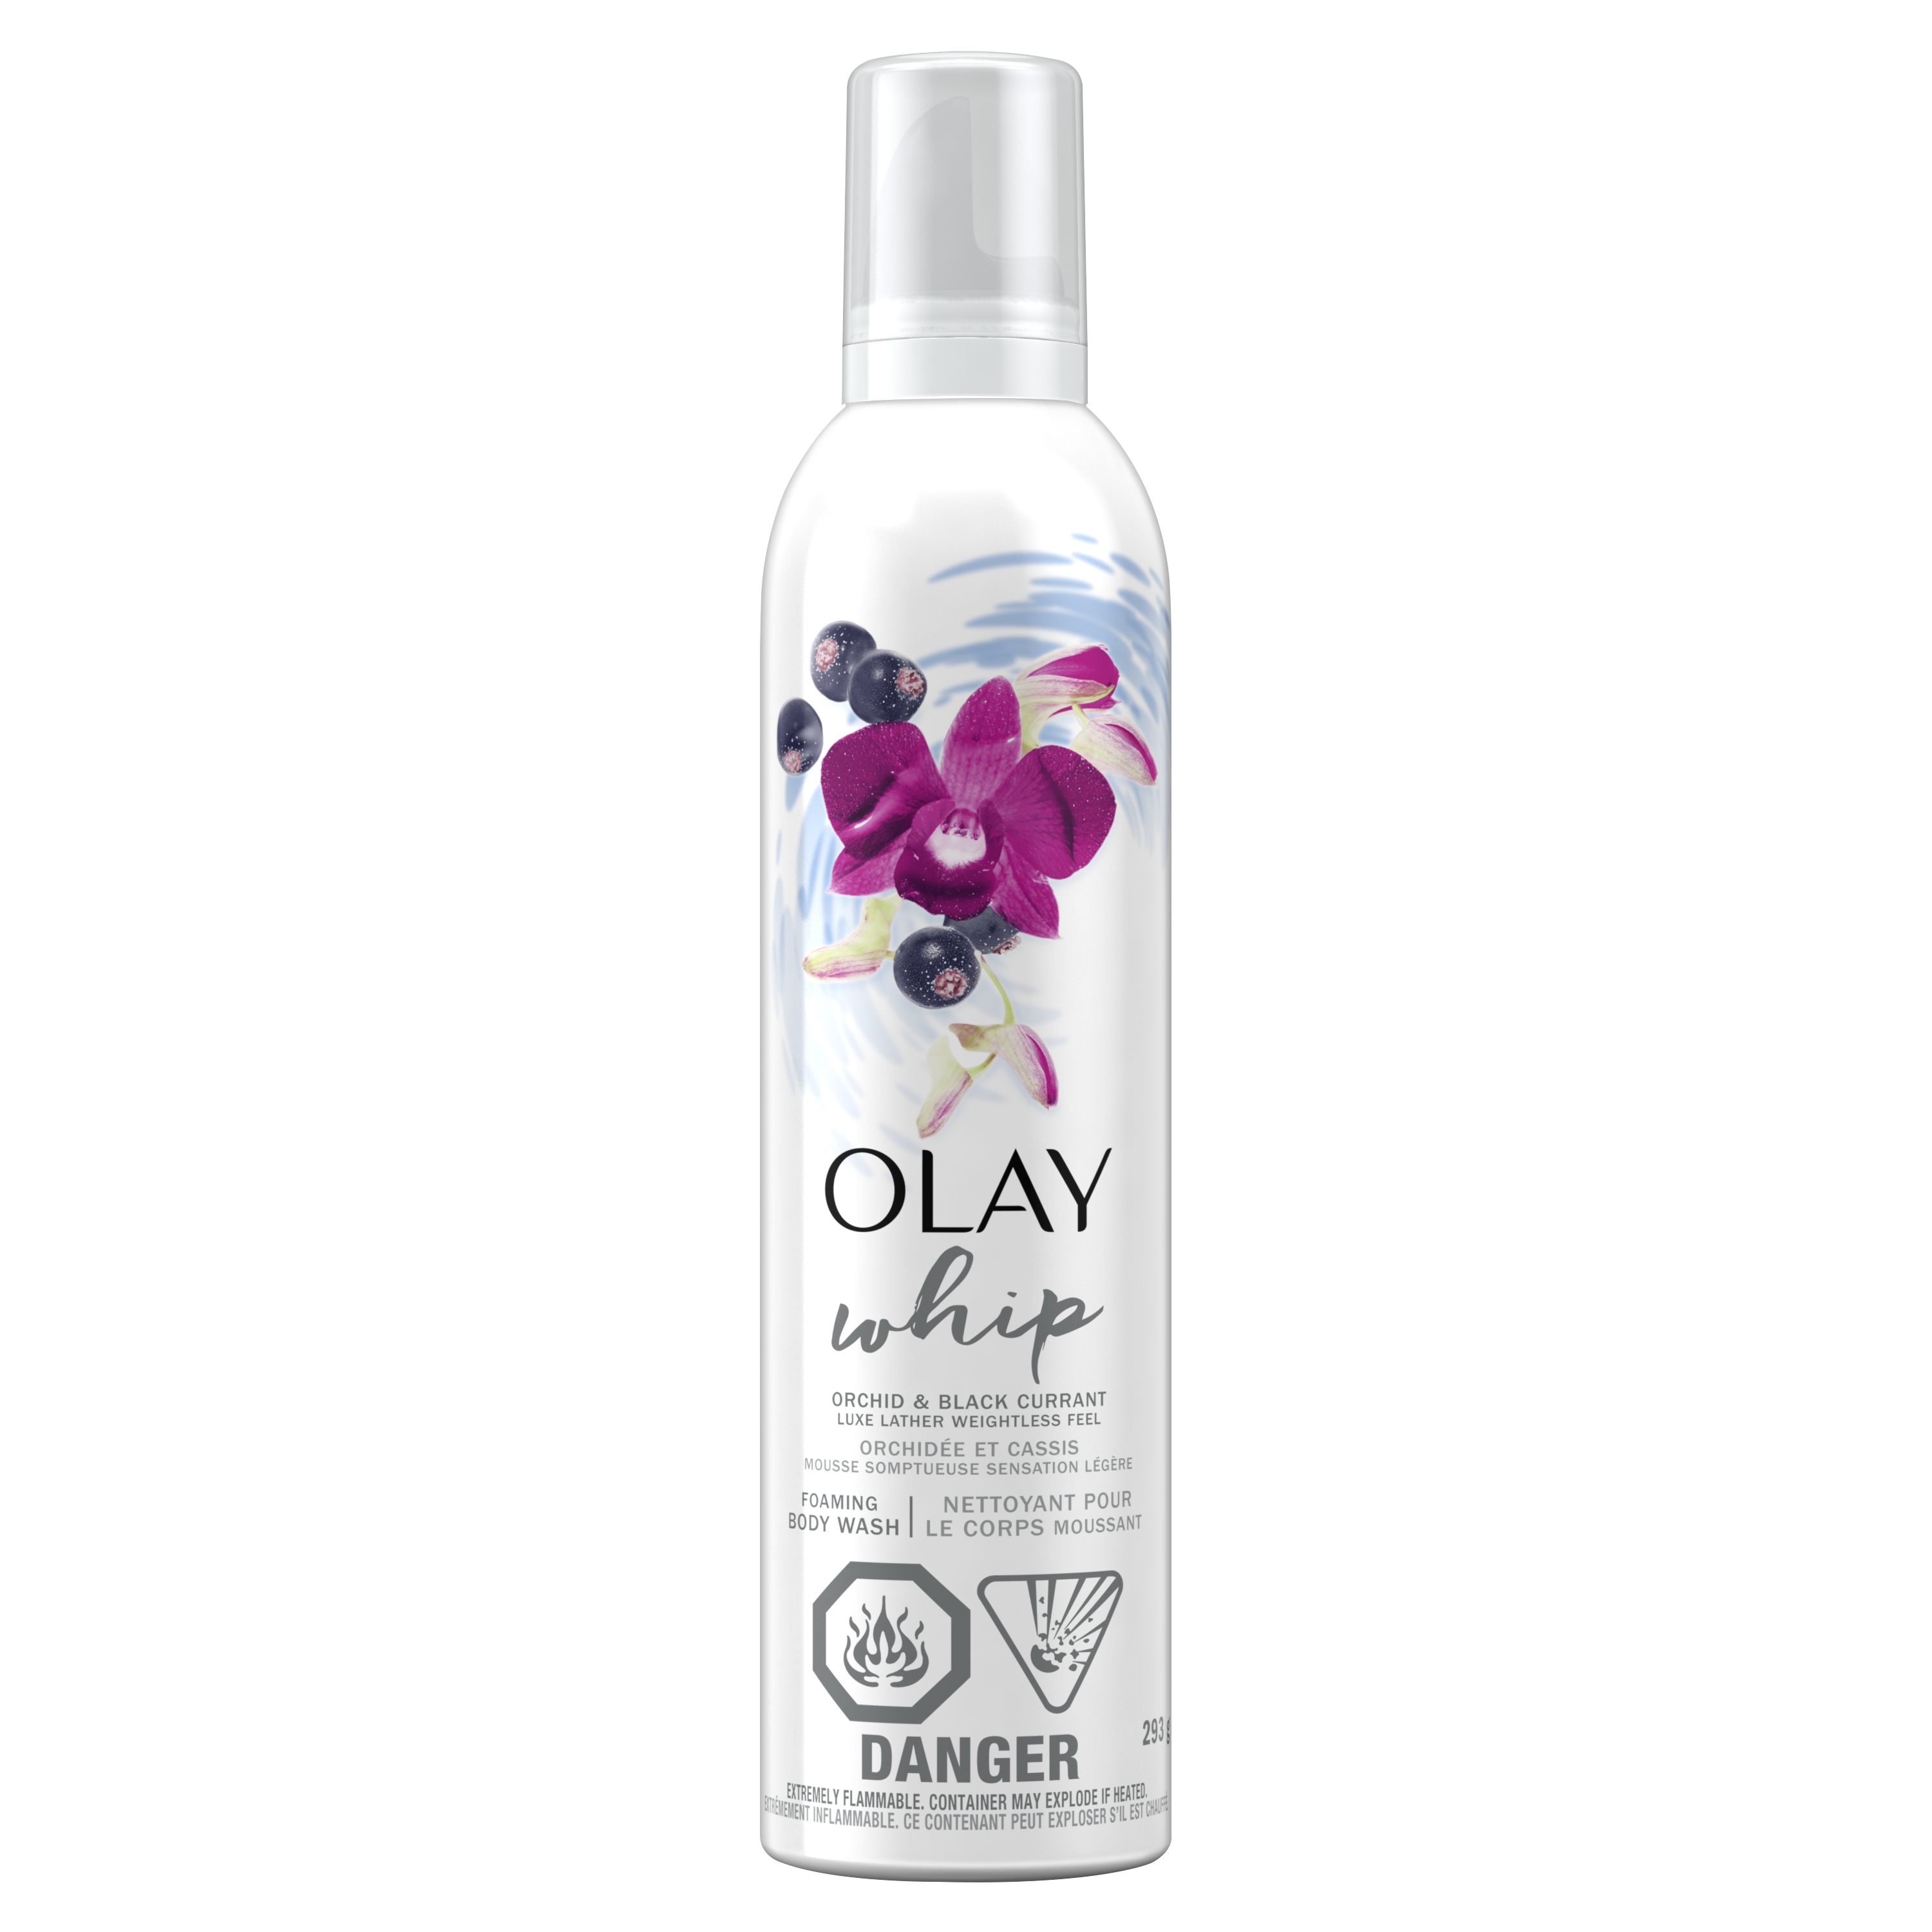 Nettoyant pour le corps moussant Olay Orchidée apaisante et cassis